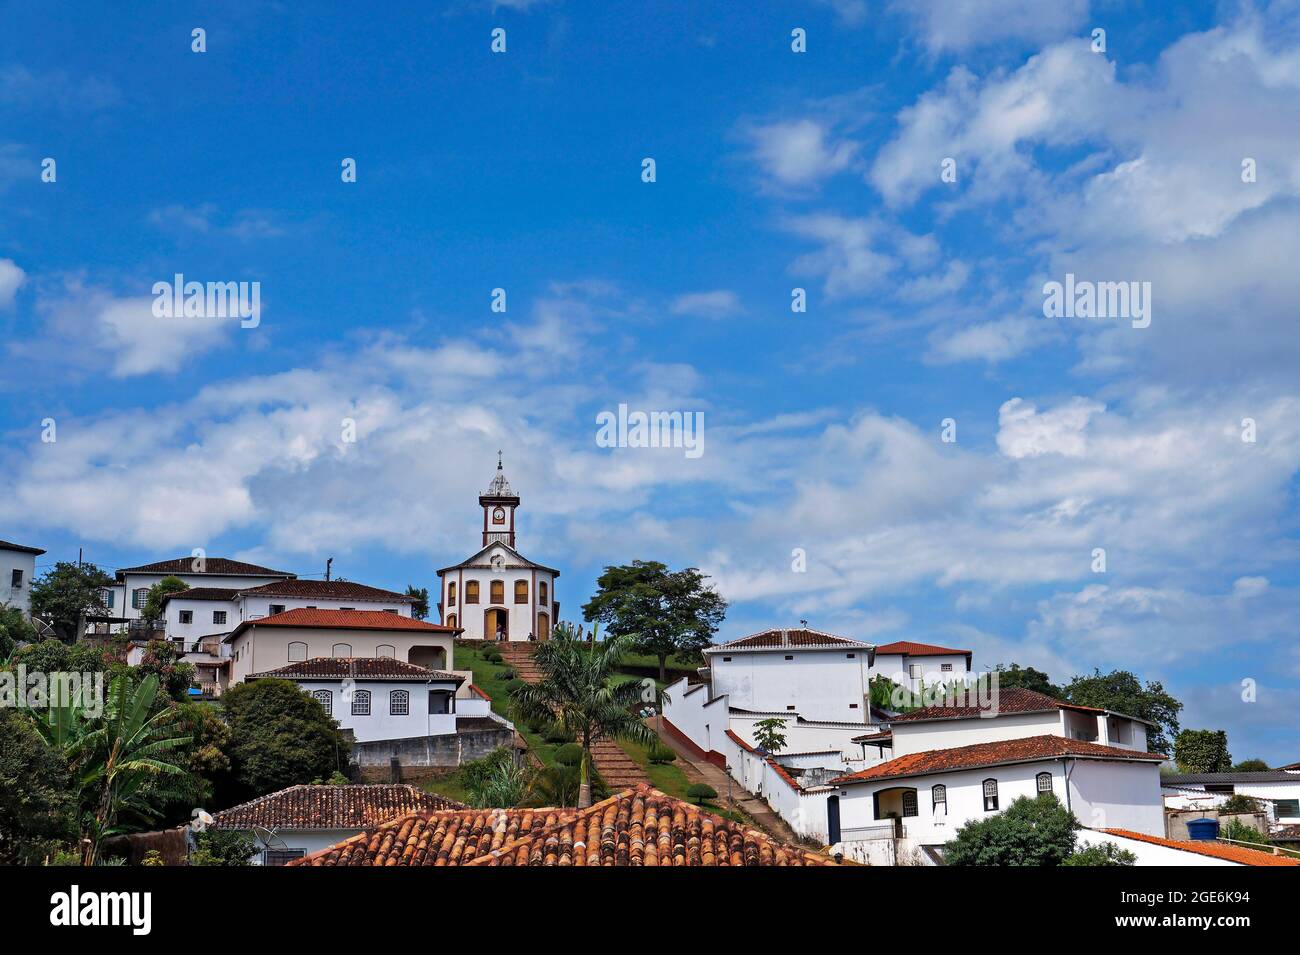 Vue panoramique de Serro, ville historique de Minas Gerais, Brésil Banque D'Images